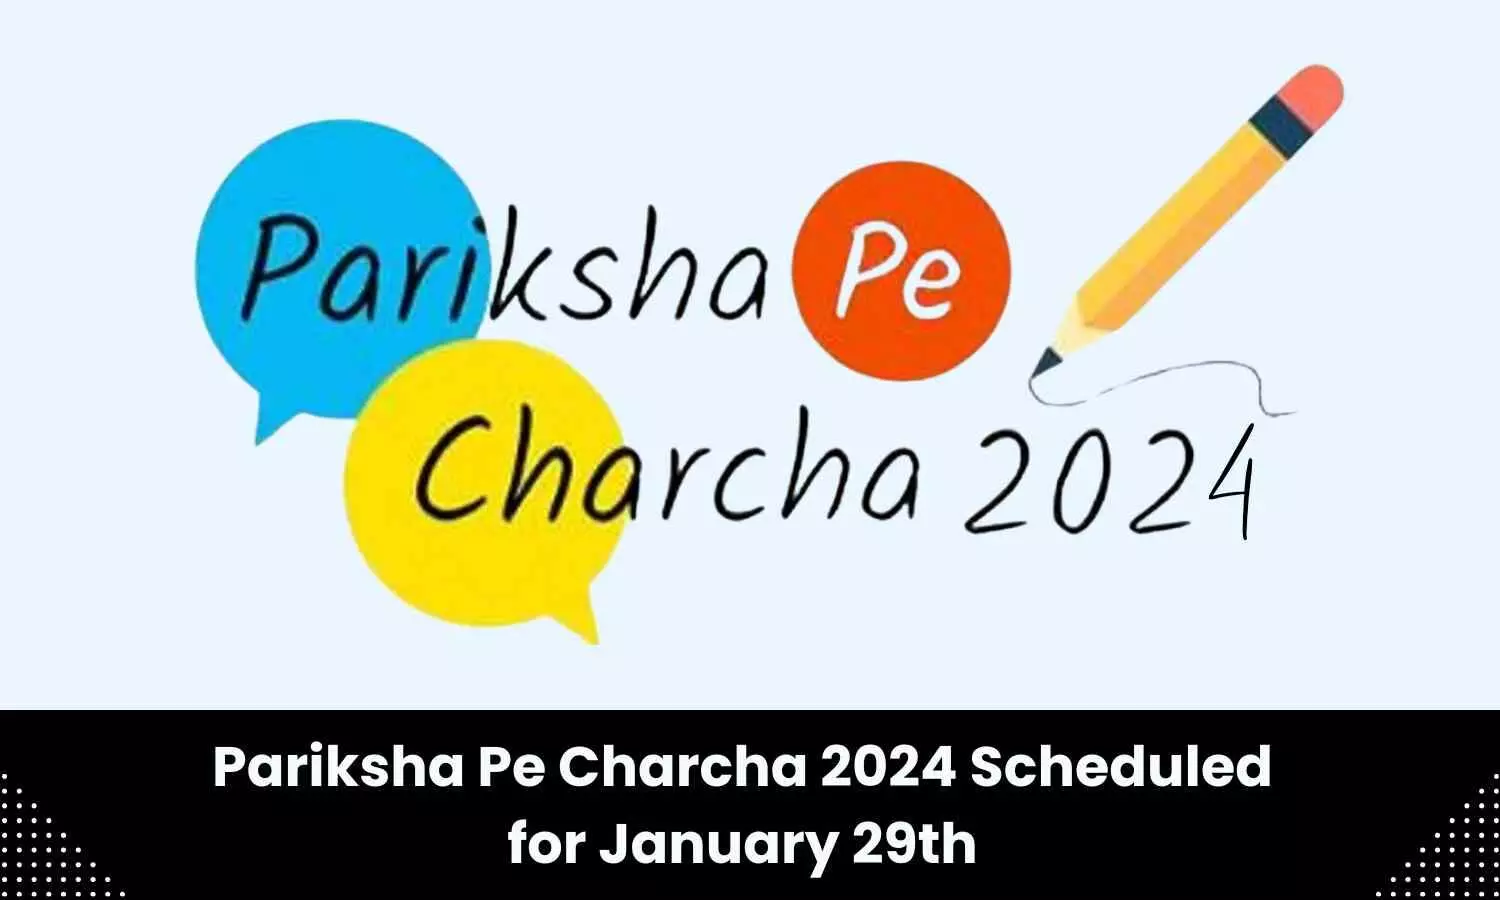 PM Modis Pariksha Pe Charcha programme to be held on January 29